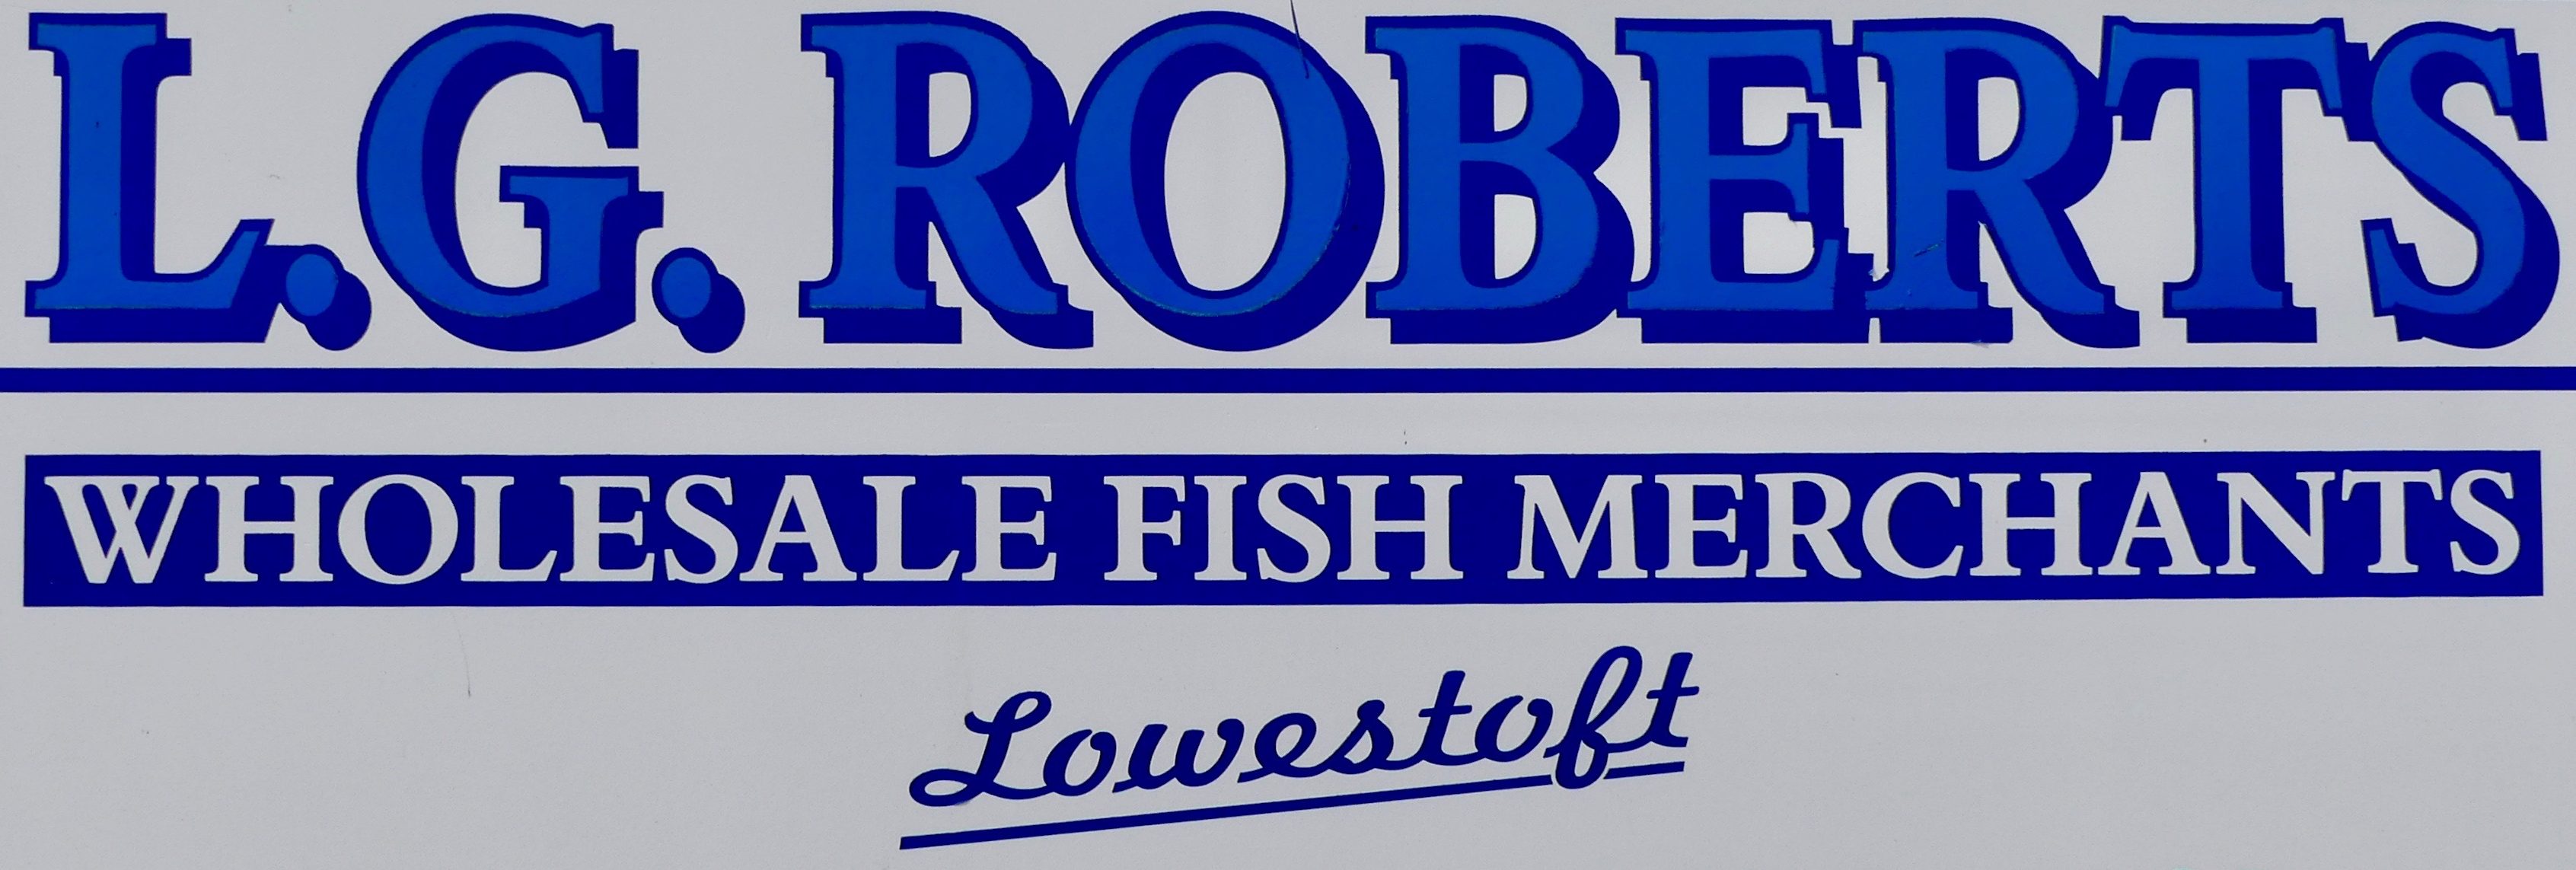 L G Roberts Fish